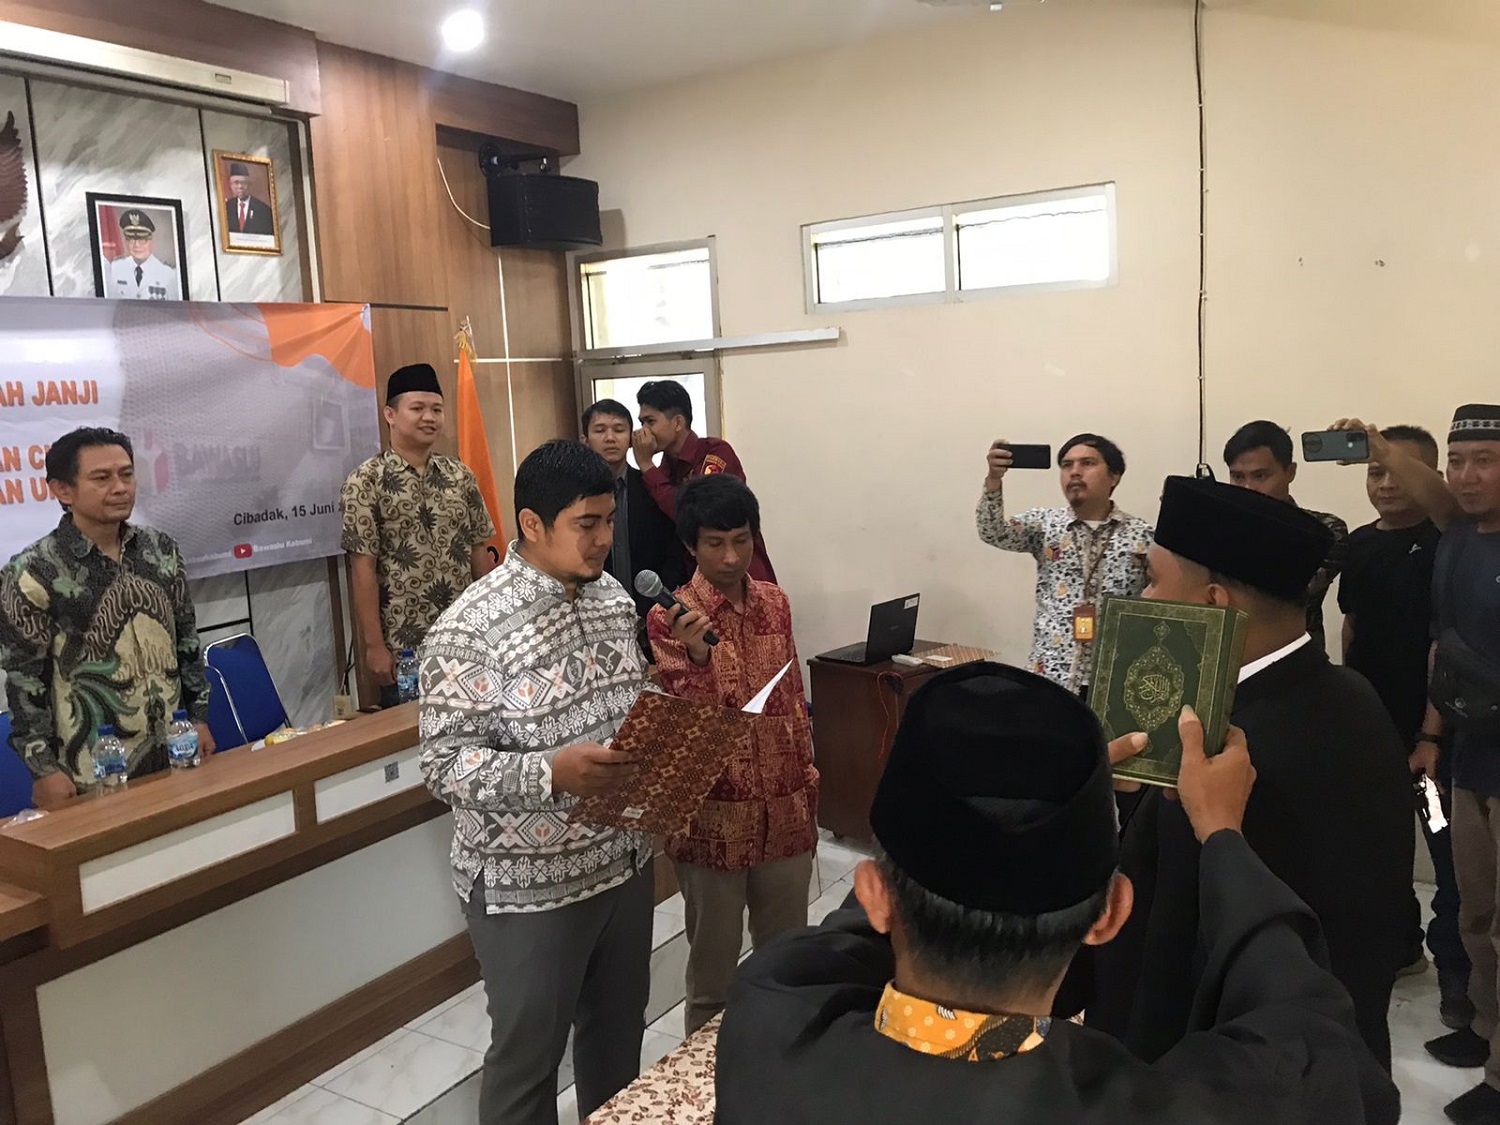 PAW : Ketua Bawaslu Kabupaten Sukabumi Teguh Hariyanto saat melakukan Penggantian antarwaktu (PAW) kepada anggota panwascam yang terlibat kasus narkoba.